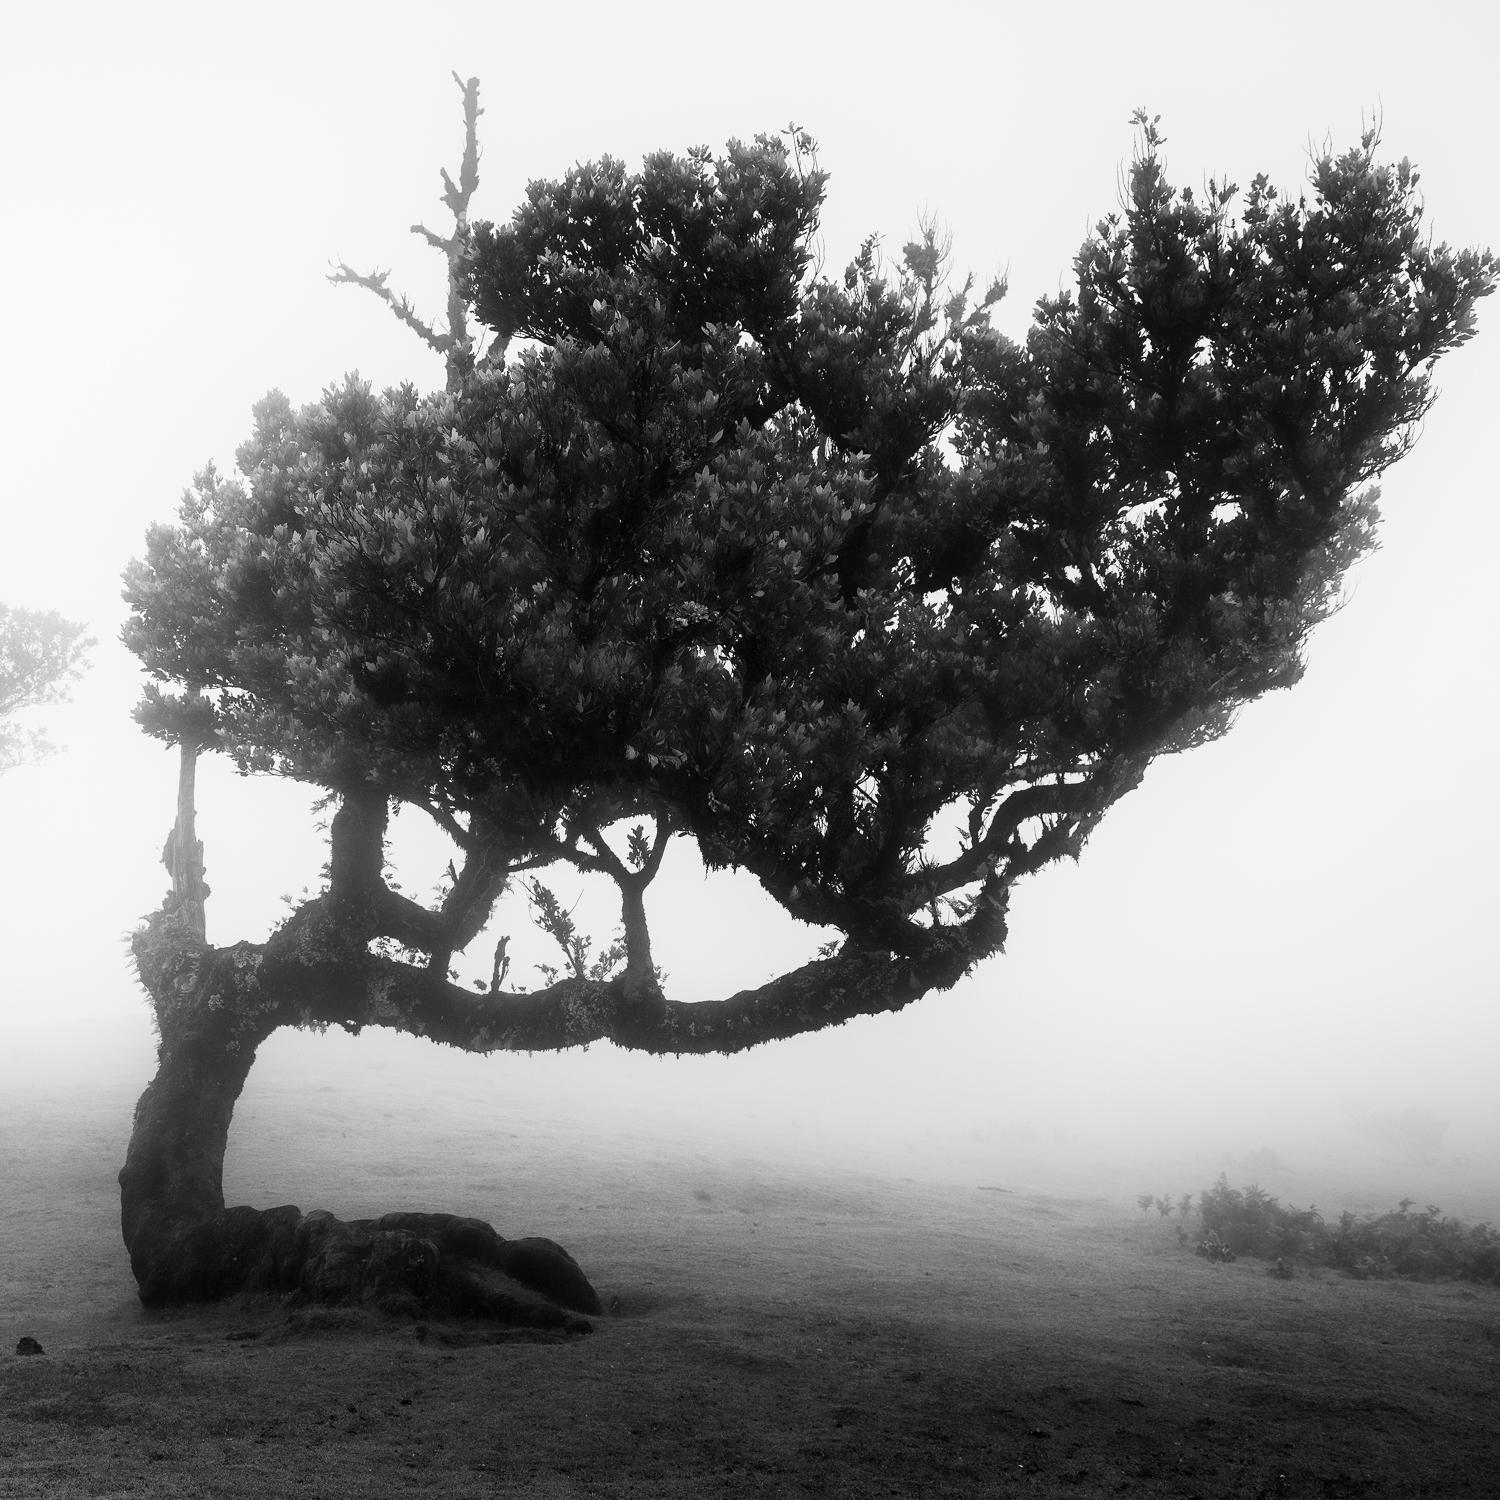  Ancient Laurel Cloud Forest, photographie d'art en noir et blanc, paysage, encadré - Contemporain Photograph par Gerald Berghammer